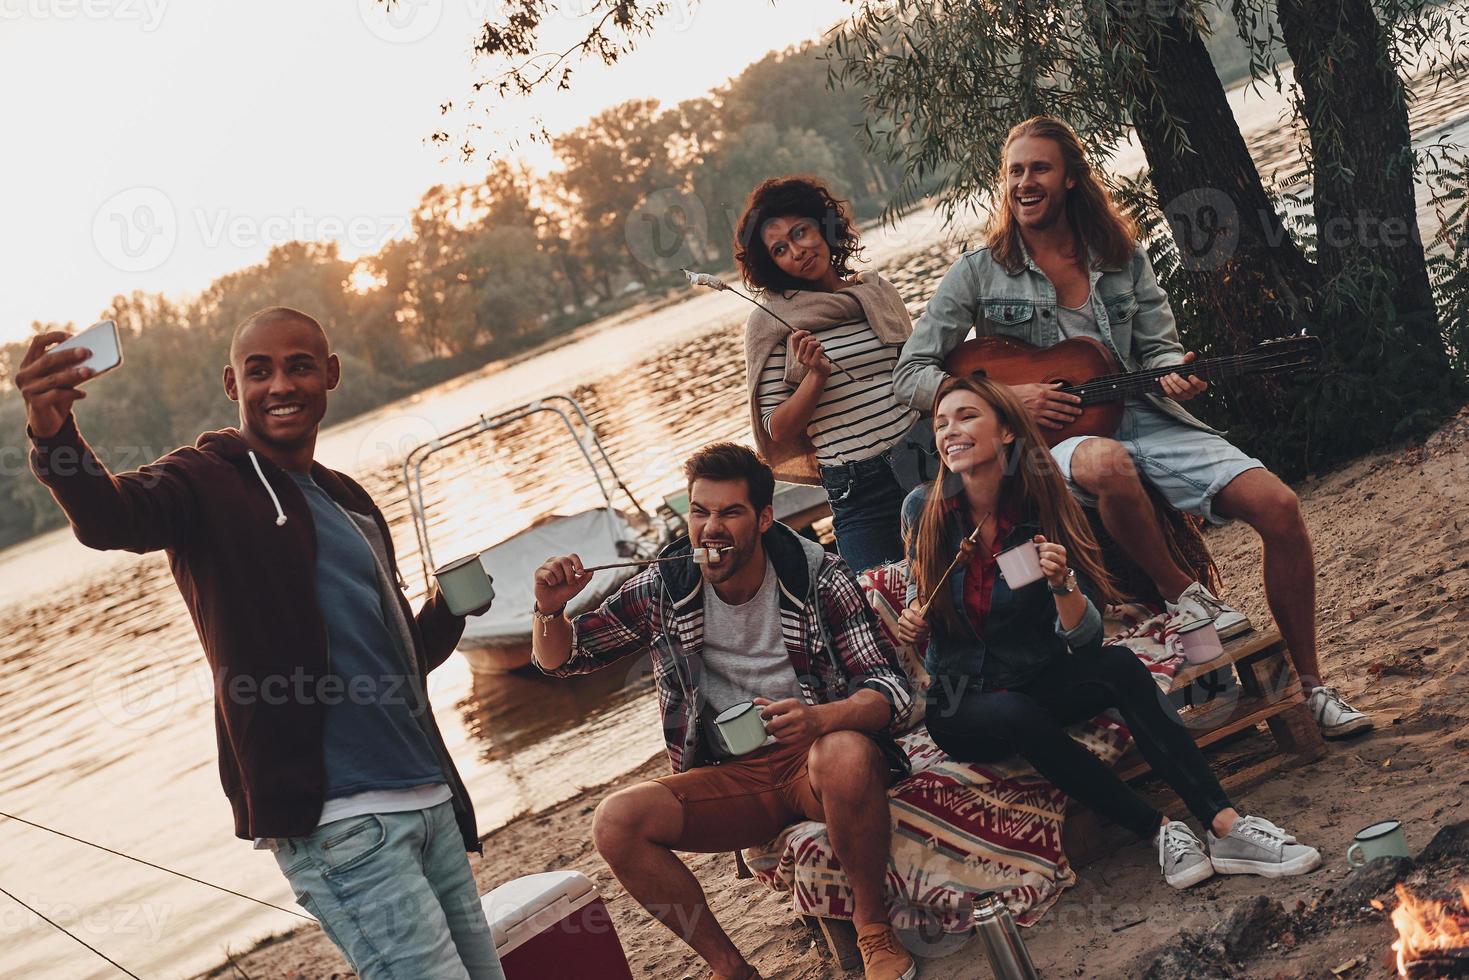 capturando momentos felices. grupo de jóvenes con ropa informal sonriendo y tomándose selfie mientras disfrutan de una fiesta en la playa cerca del lago foto